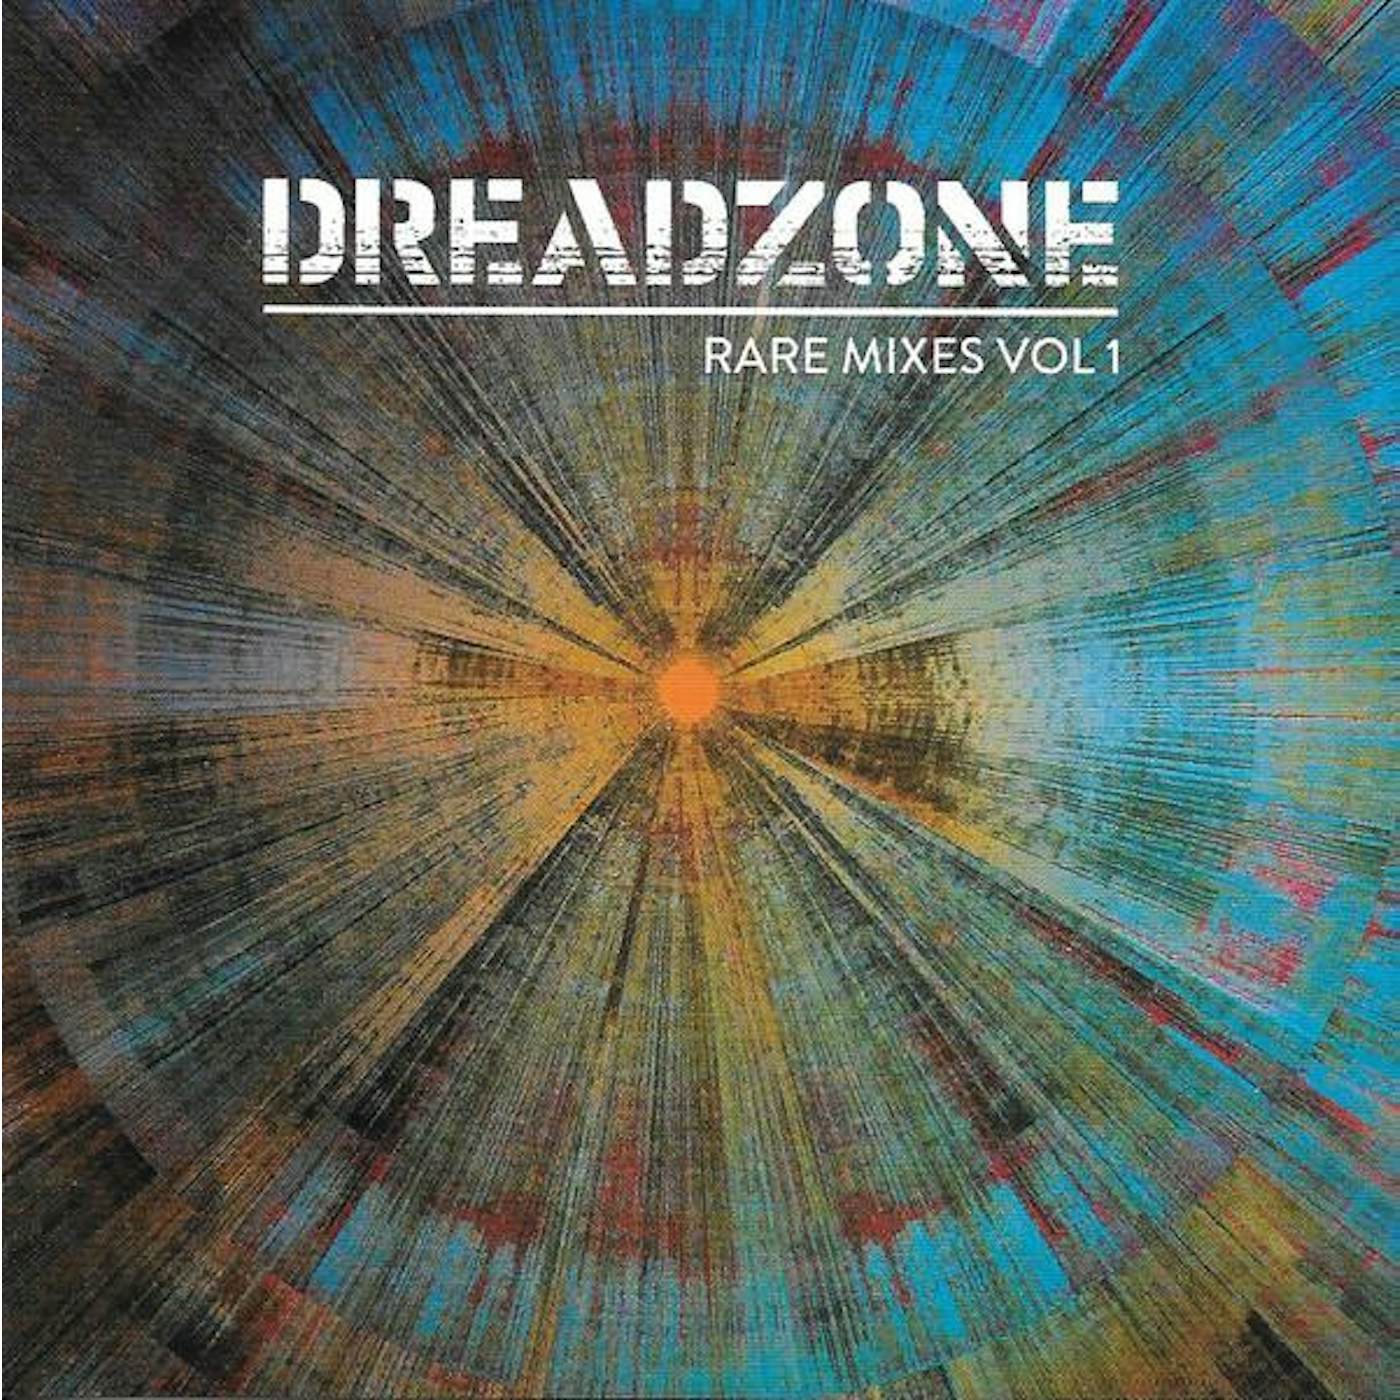 Dreadzone RARE MIXES VOL 1 CD